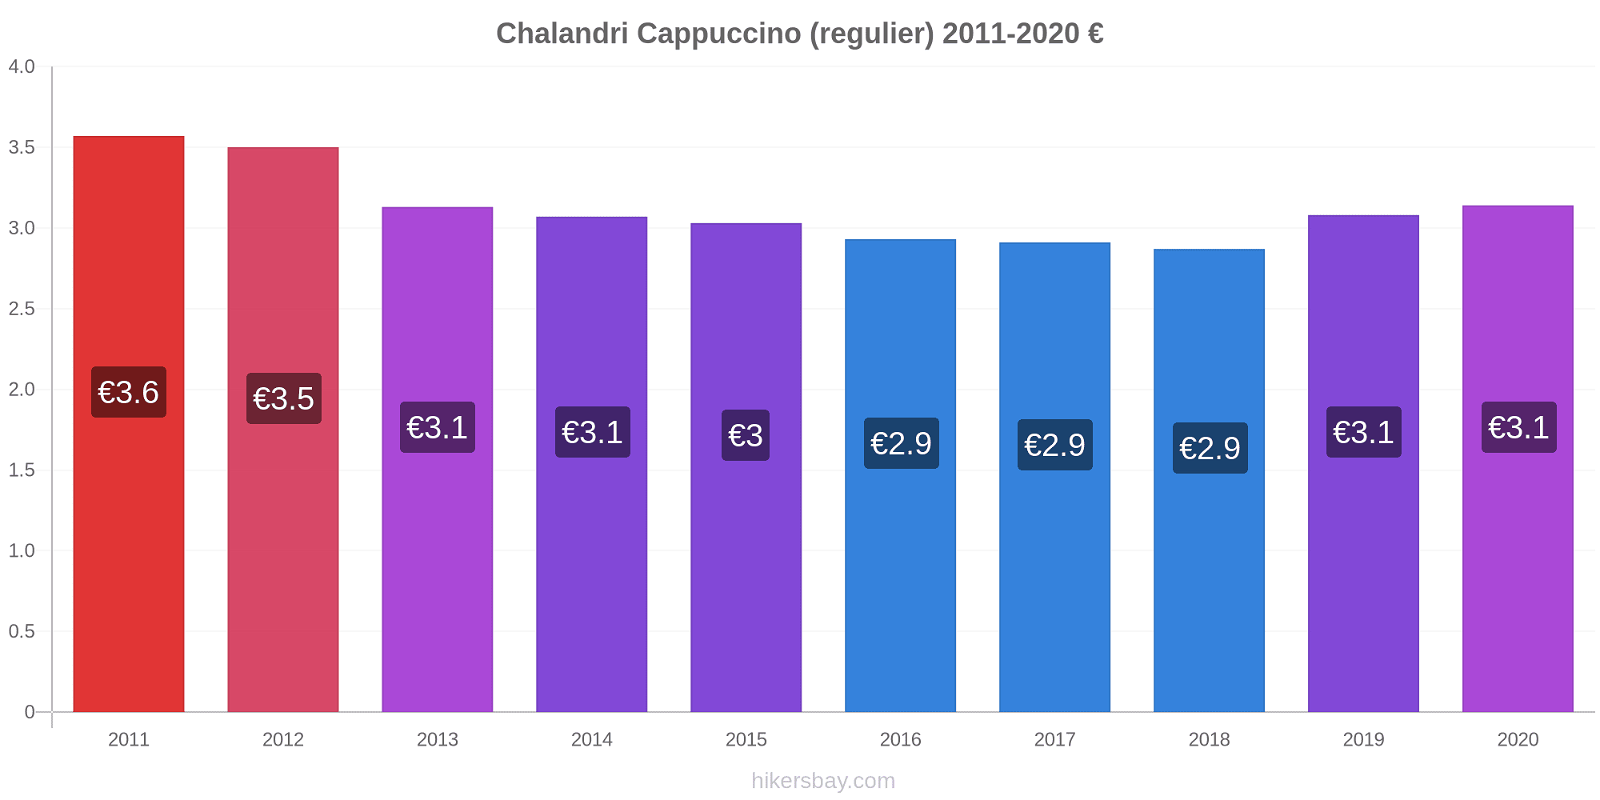 Chalandri prijswijzigingen Cappuccino (regelmatige) hikersbay.com